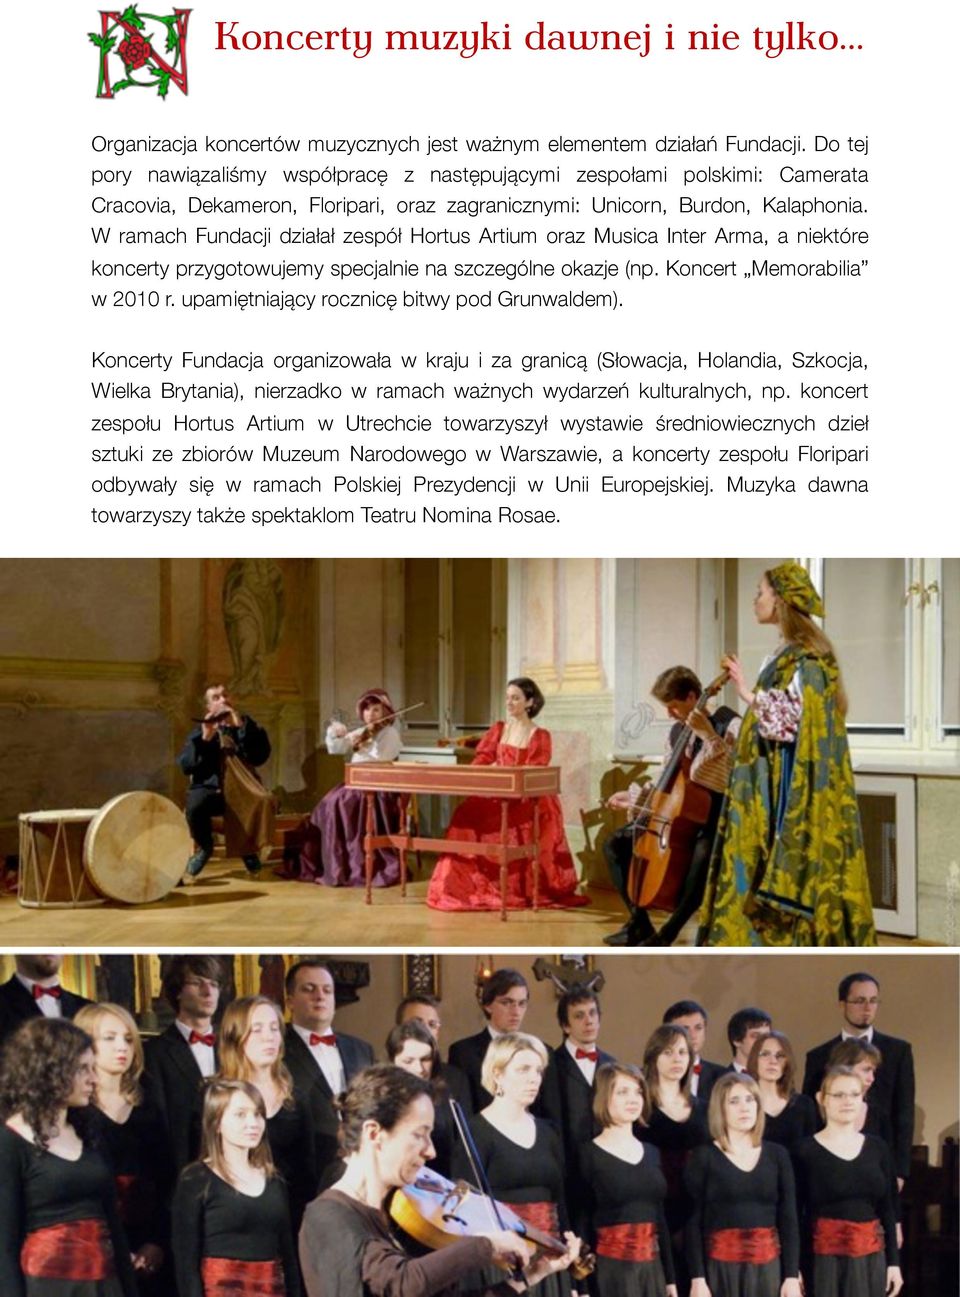 W ramach Fundacji działał zespół Hortus Artium oraz Musica Inter Arma, a niektóre koncerty przygotowujemy specjalnie na szczególne okazje (np. Koncert Memorabilia w 2010 r.